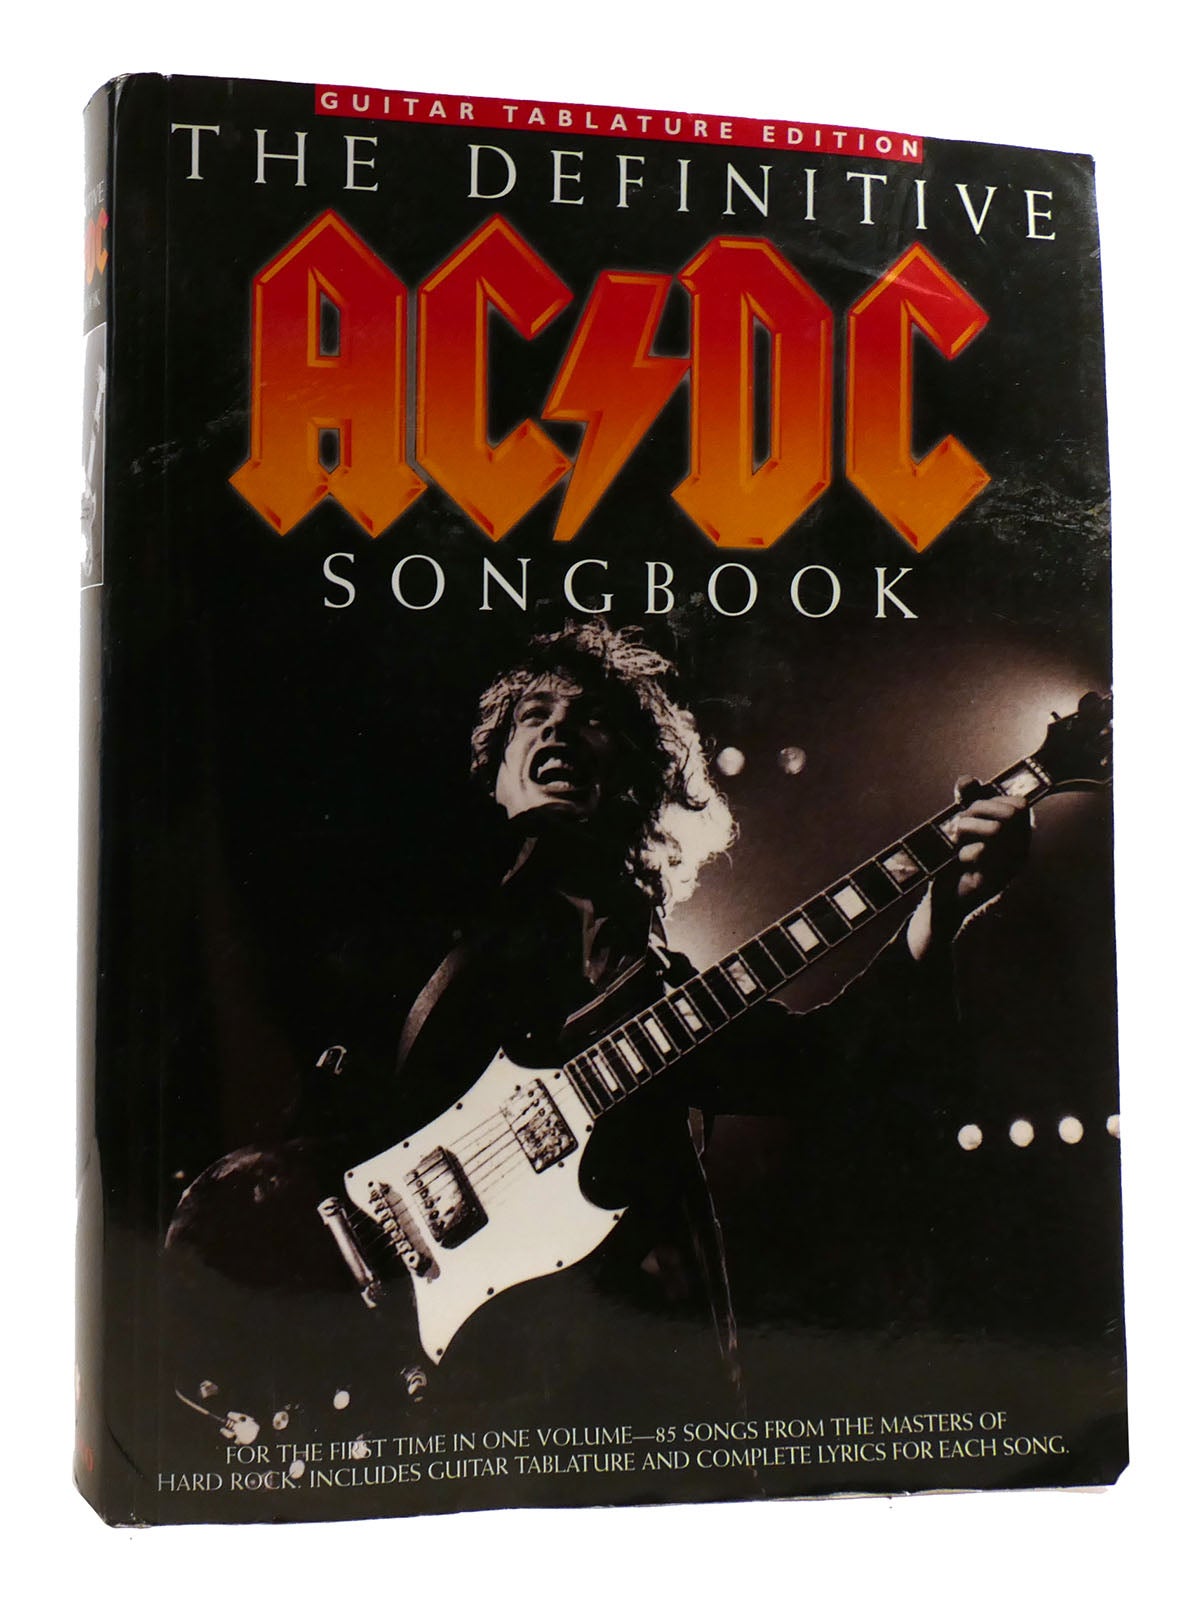 The Definitive Ac/Dc Songbook - Songbook de AC/DC. Pela primeira